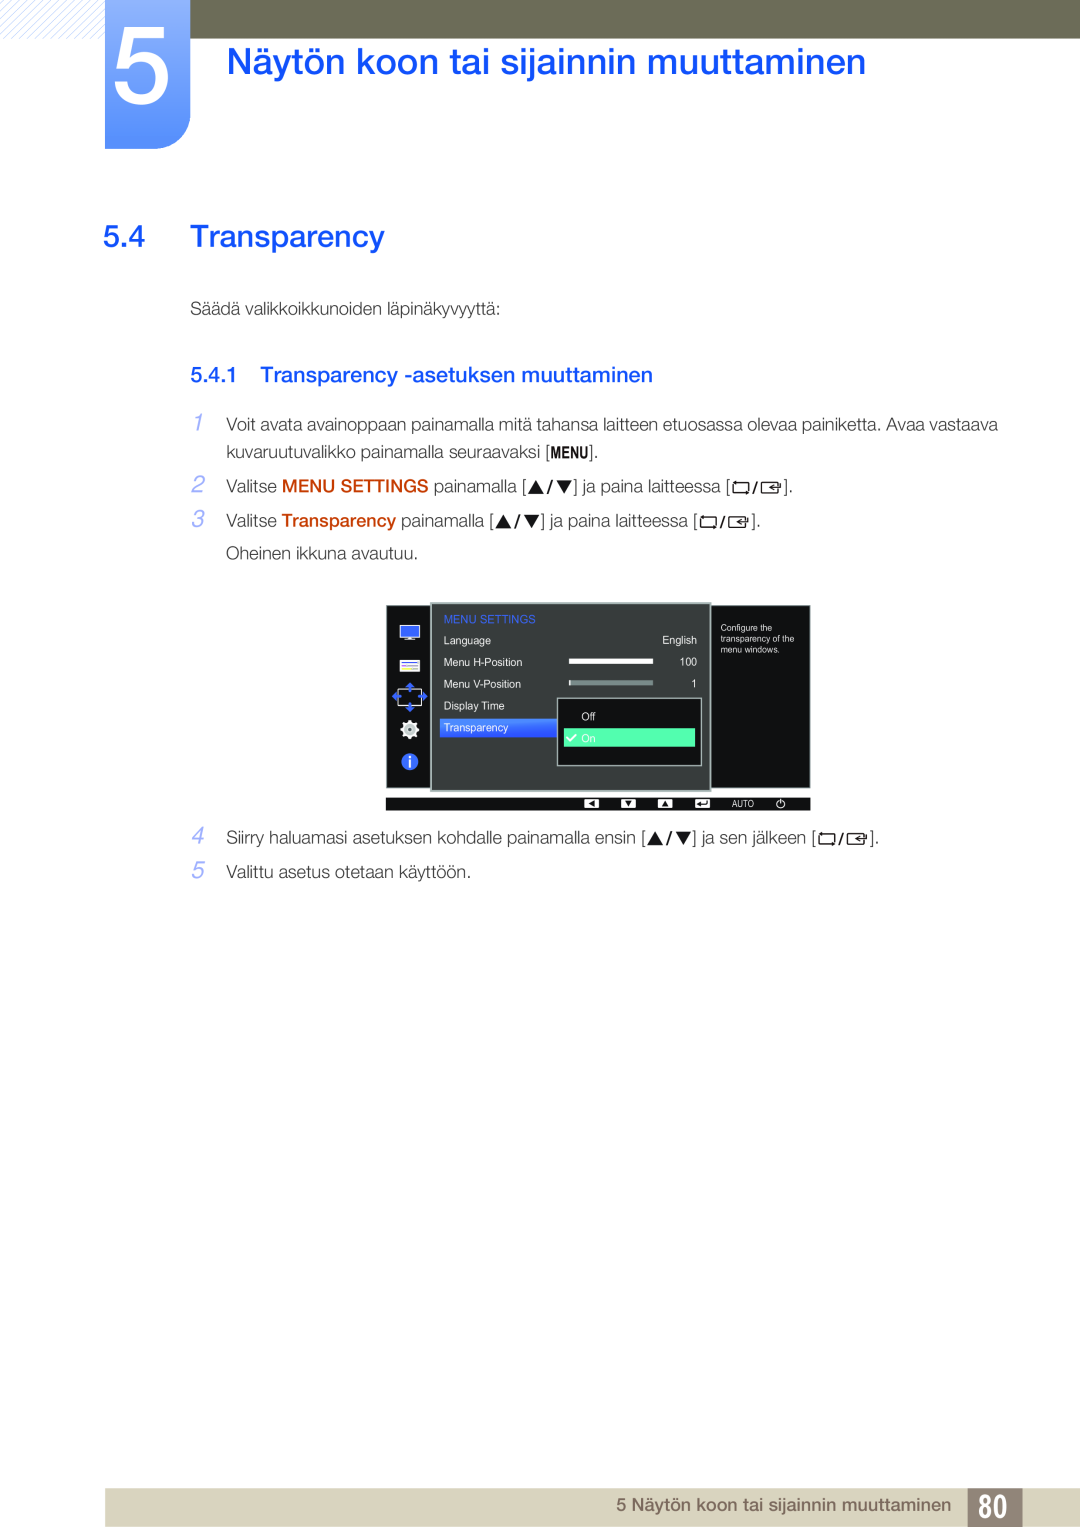 Samsung LS23E65UDS/EN, LS23E65UDC/EN manual Transparency -asetuksen muuttaminen, 5 Näytön koon tai sijainnin muuttaminen 